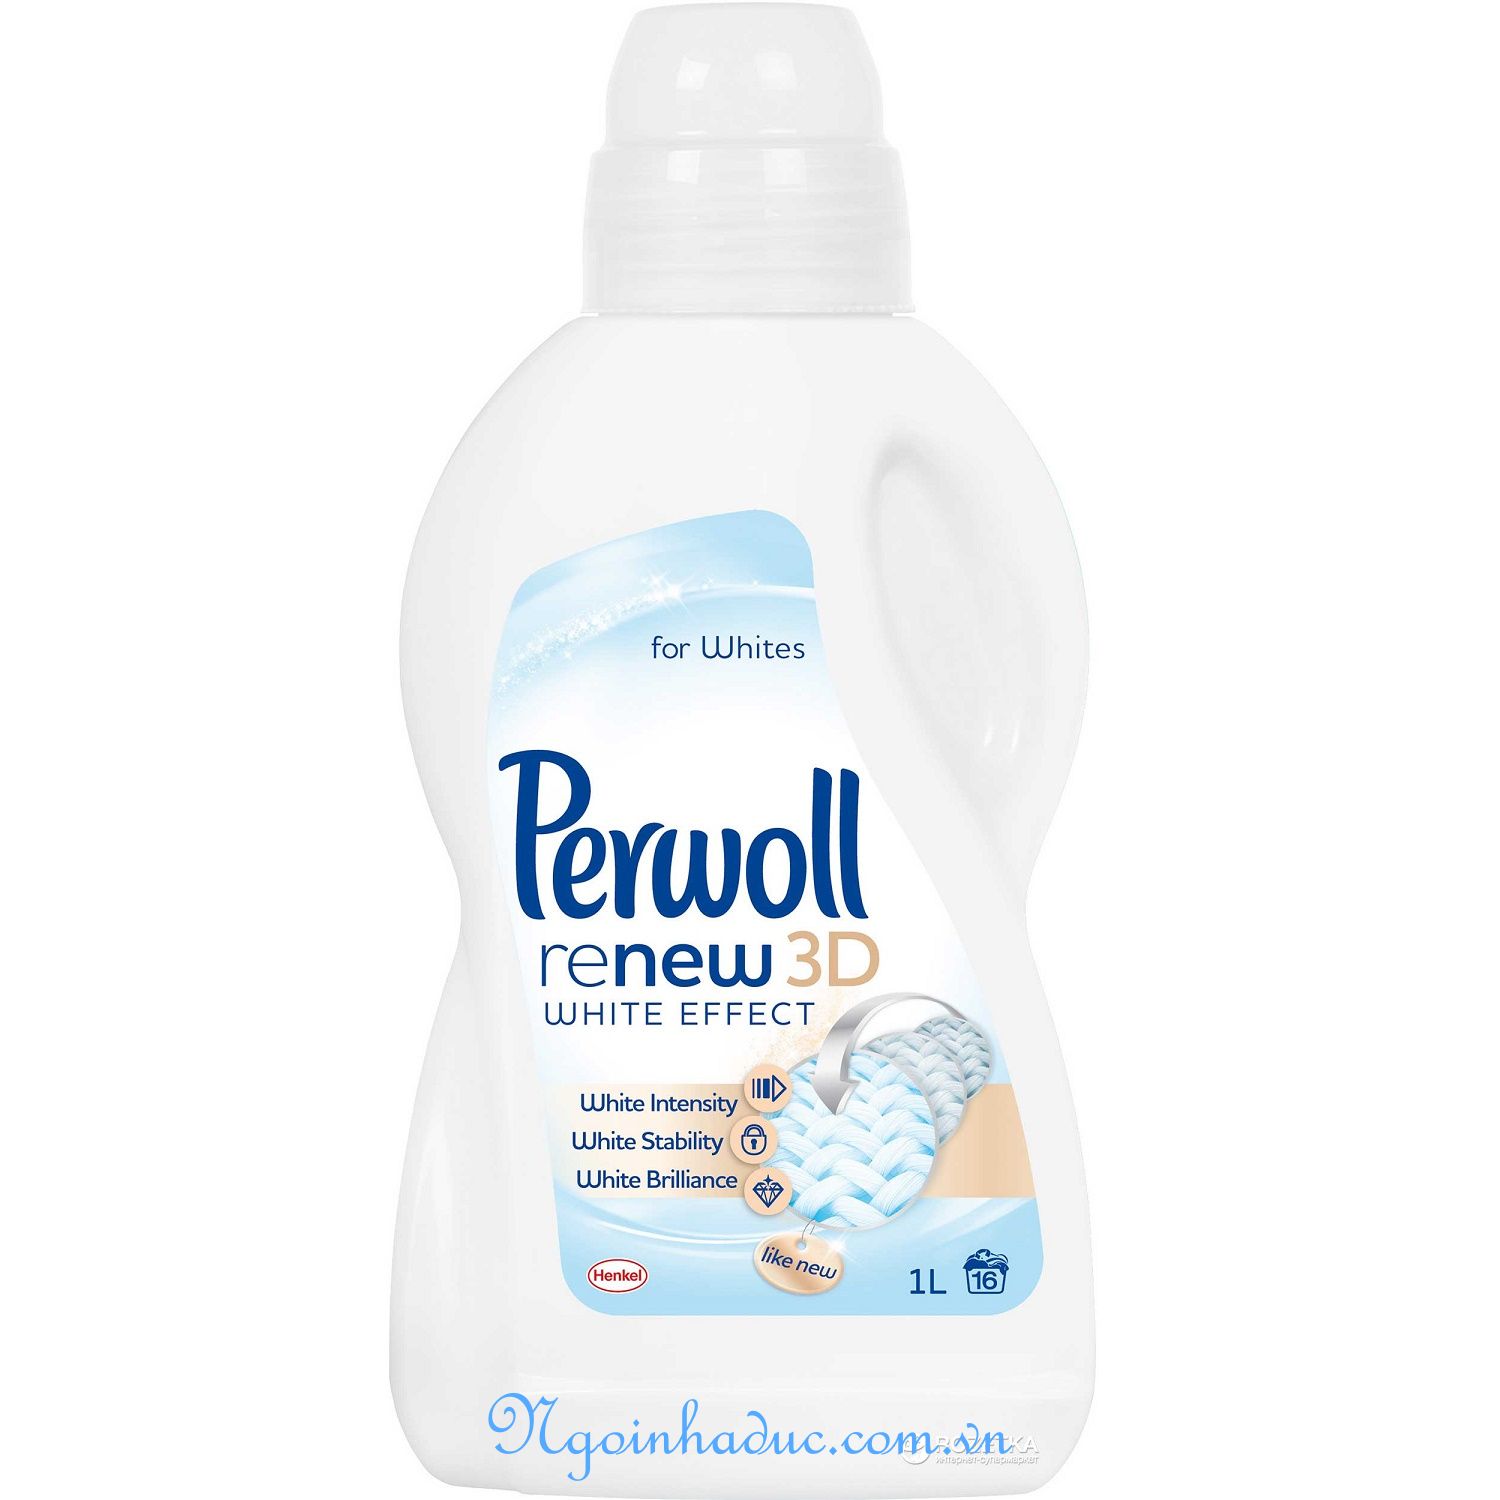 Nước giặt quần áo trắng Perwoll 3D (1L)